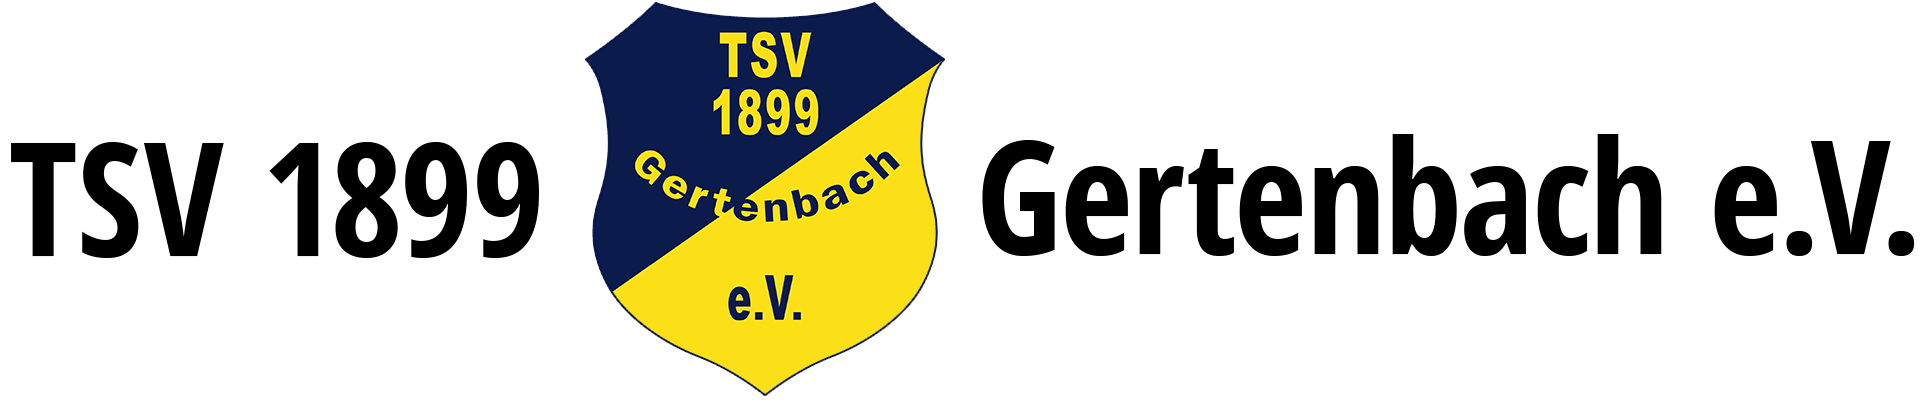 TSV Gertenbach